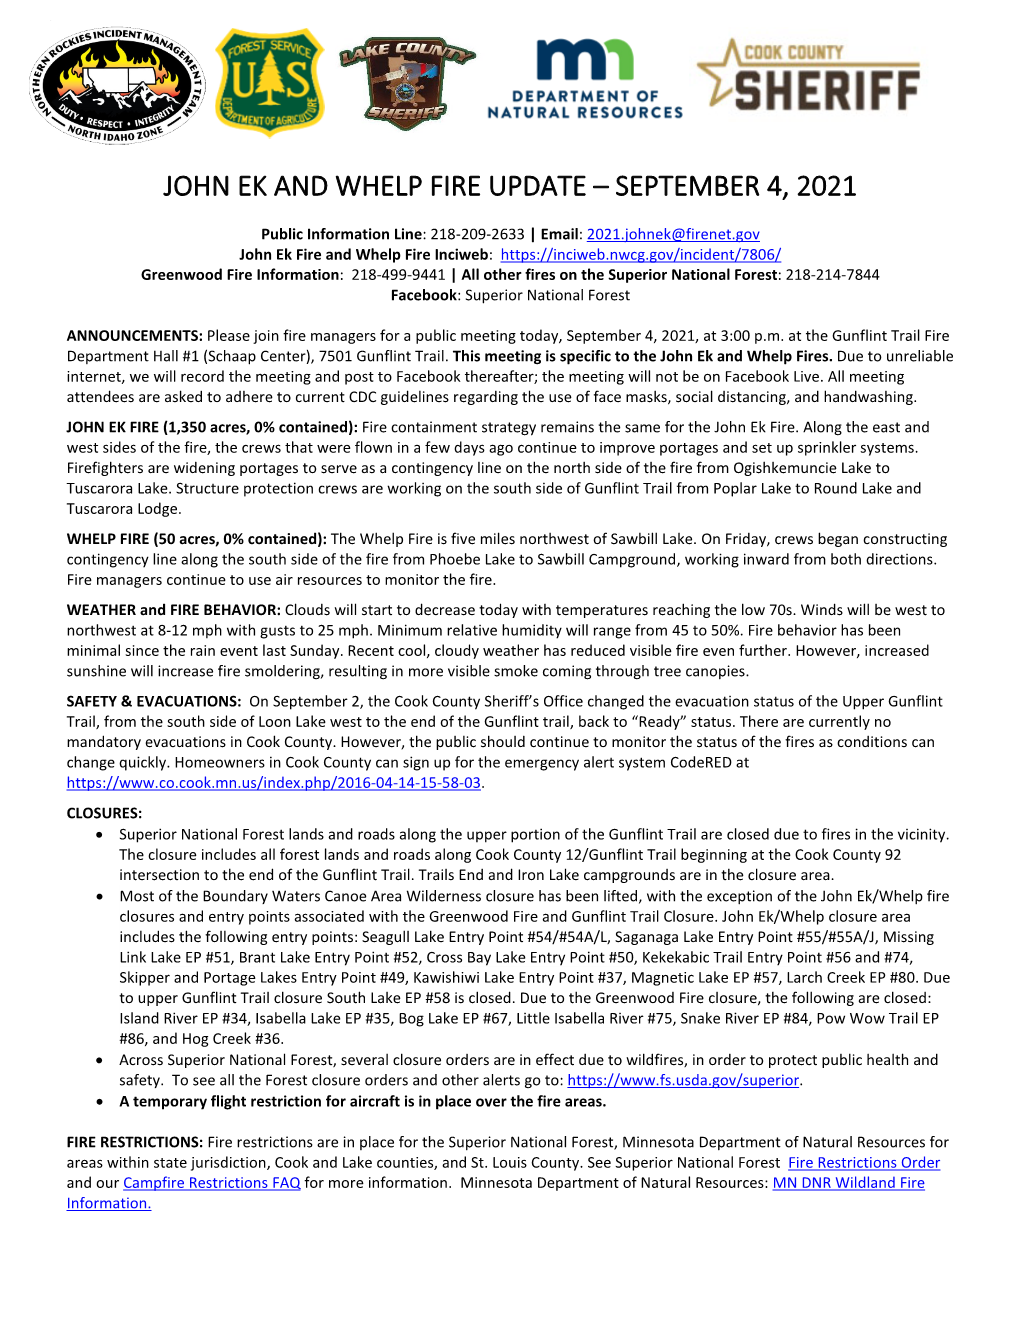 John Ek and Whelp Fire Update – September 4, 2021